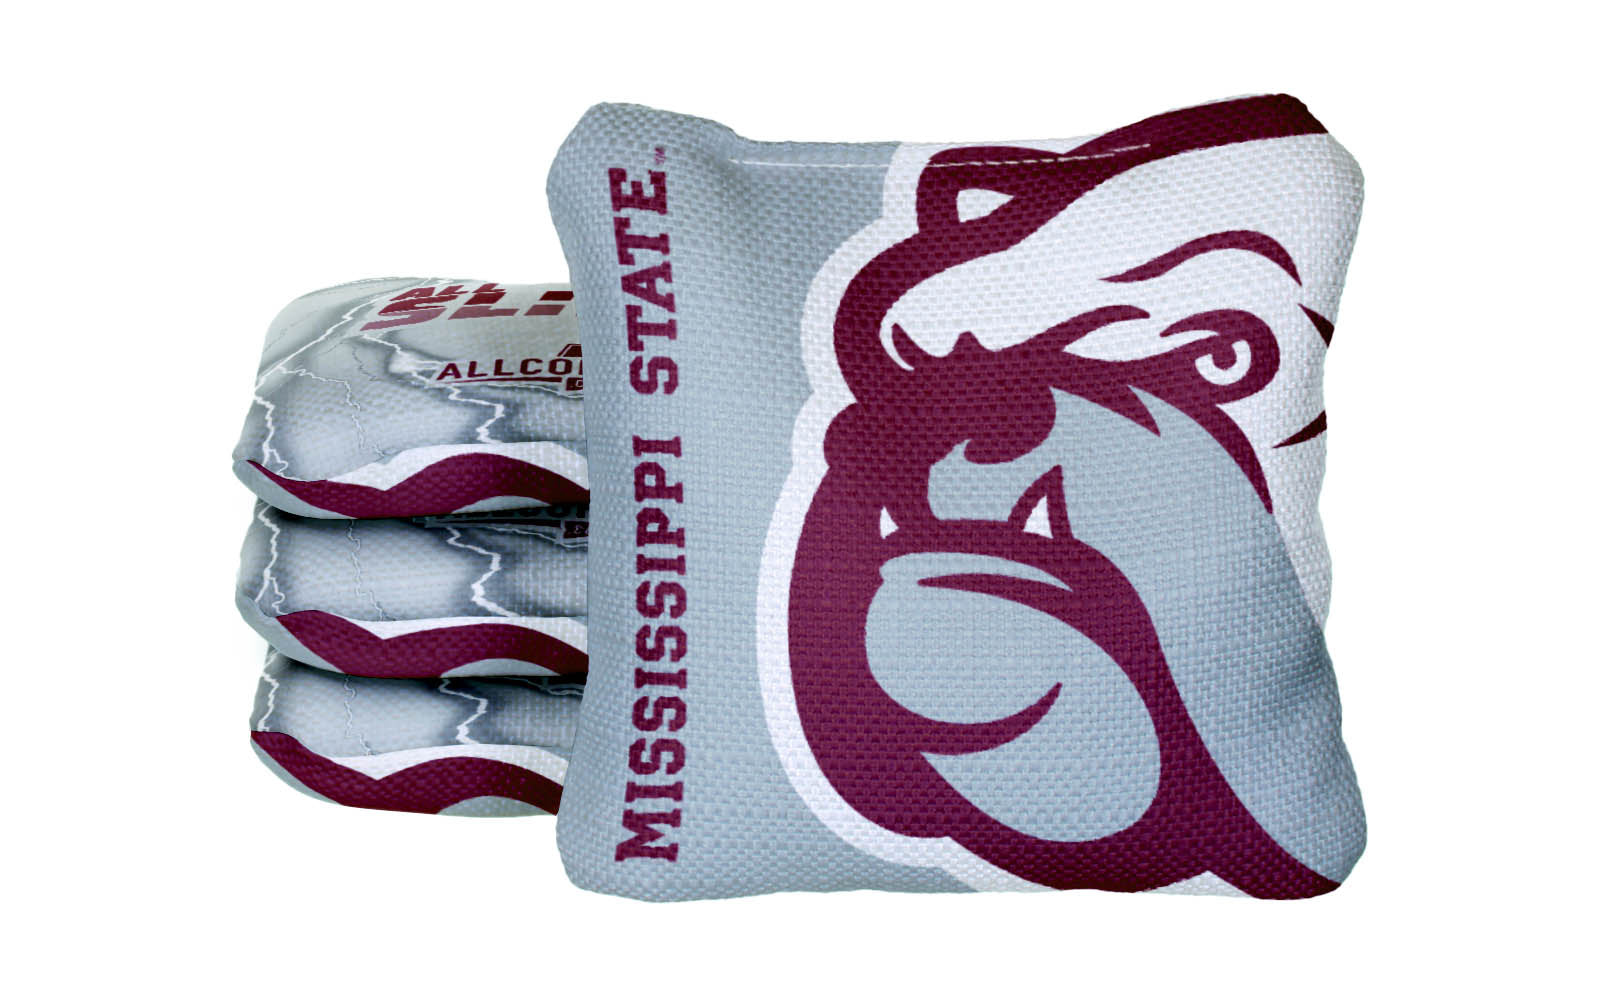 Officially Licensed Collegiate Cornhole Bags - AllCornhole All-Slide 2.0 - Set of 4 - Mississippi State University